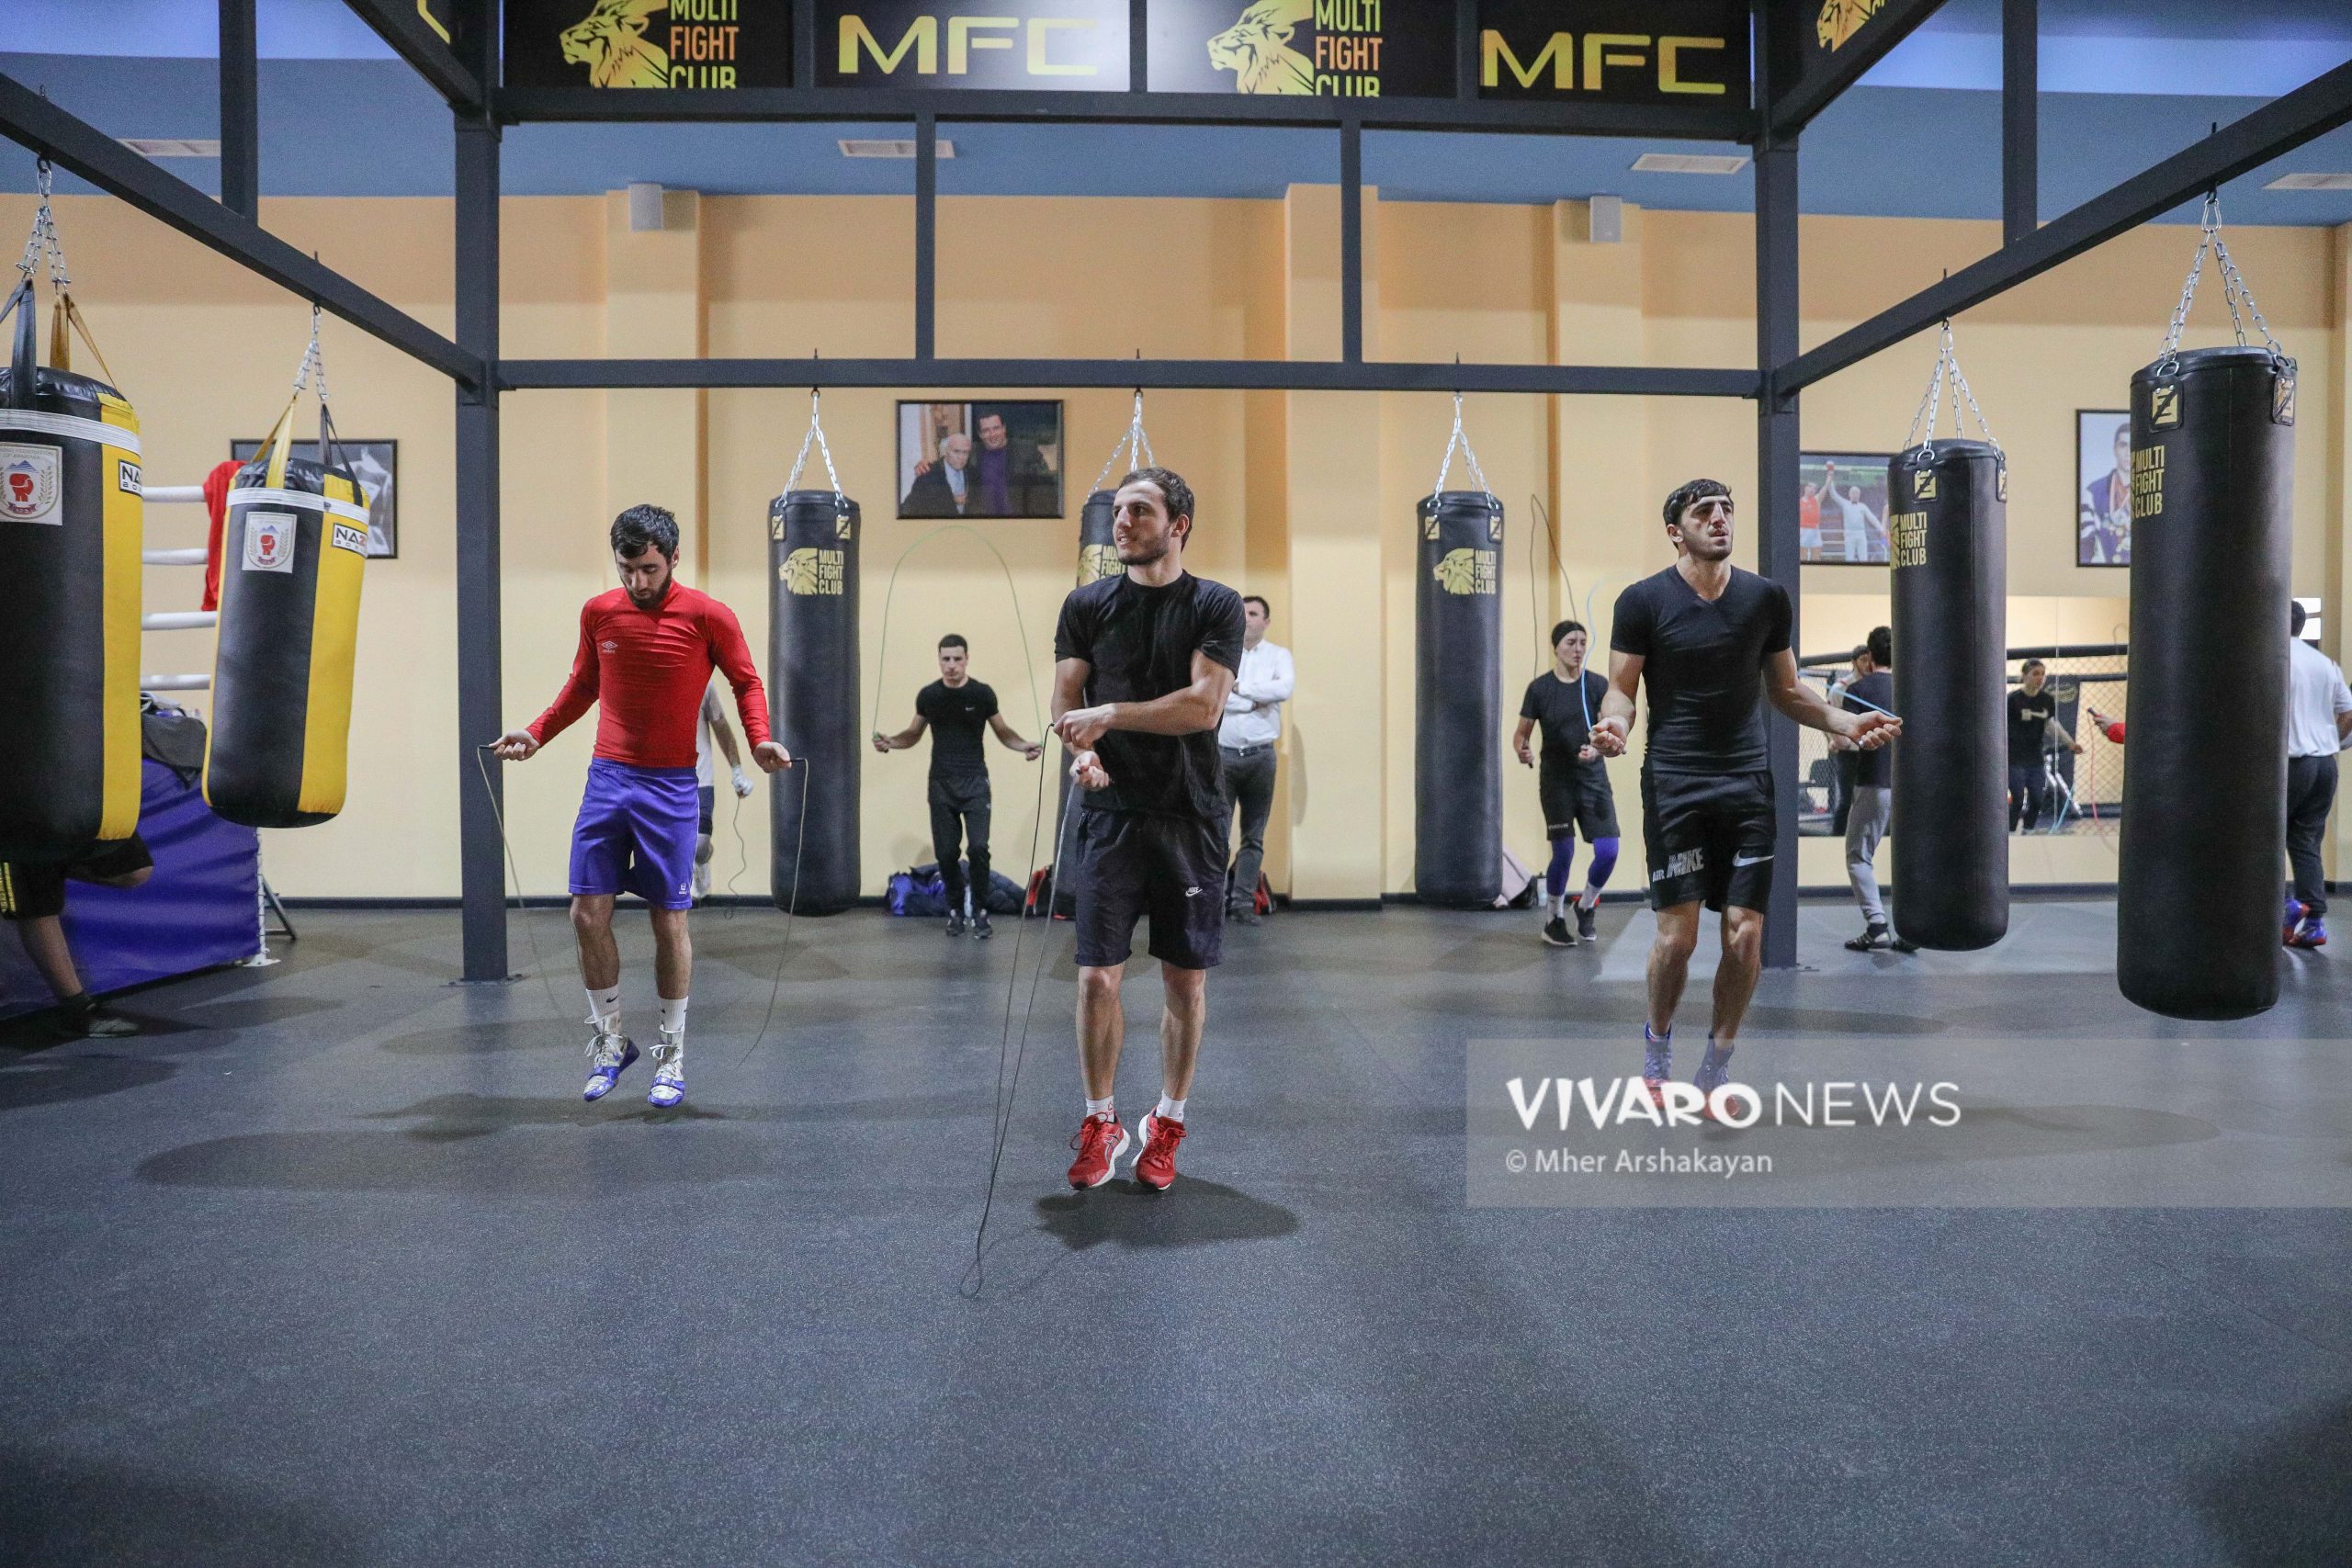 boxing training 17 scaled - Դեպի տարվա առաջին քննություն. հայ բռնցքամարտիկների մարզումը լուսանկարներով